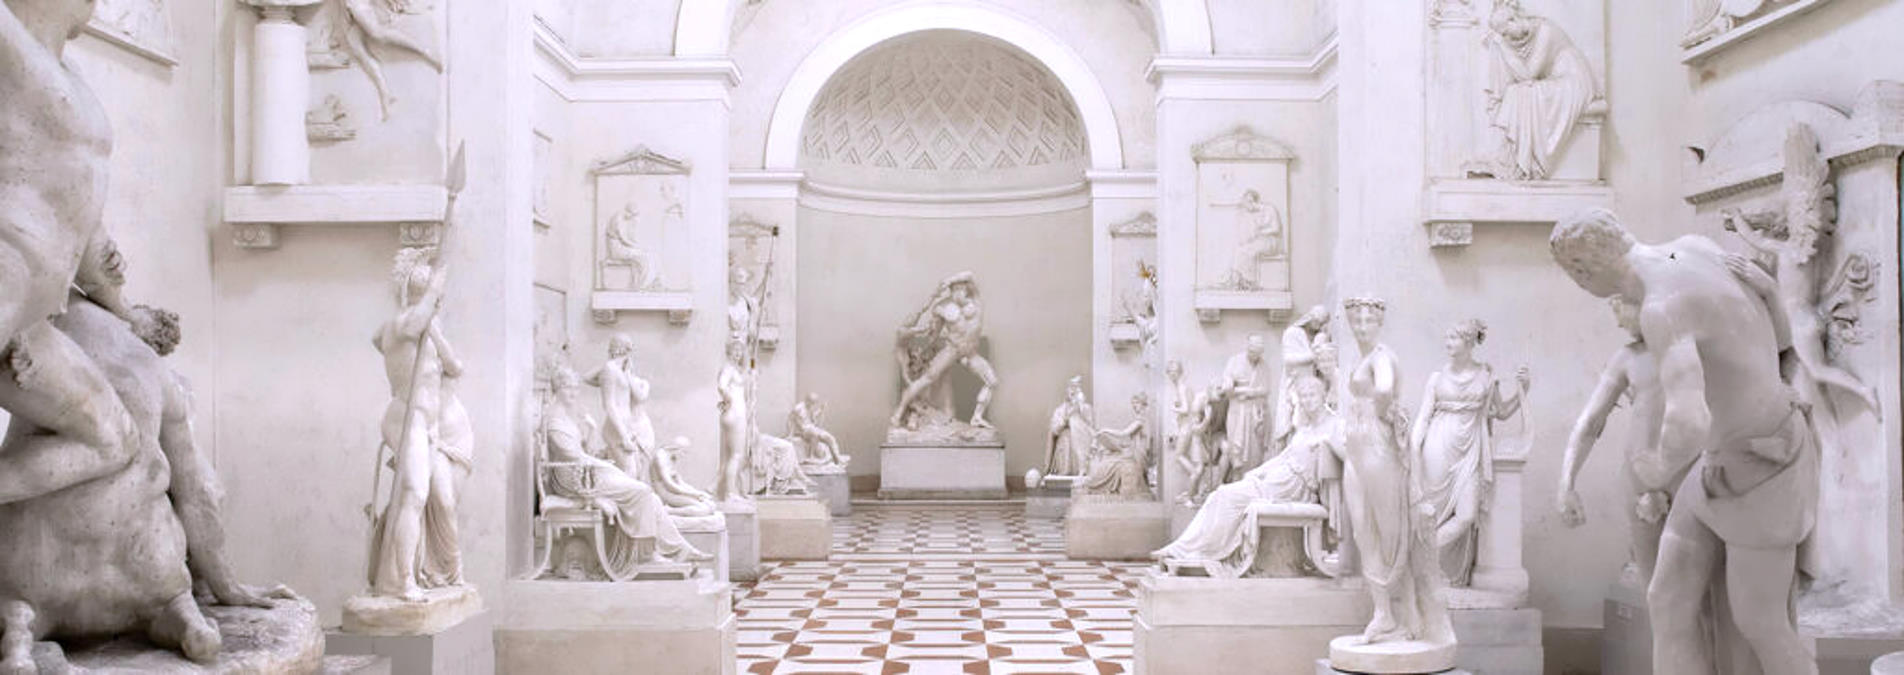 1822/2022- BICENTENARIO DI ANTONIO CANOVA - A Possagno il museo della sua arte. L’artista “il cui marmo diveniva carne”